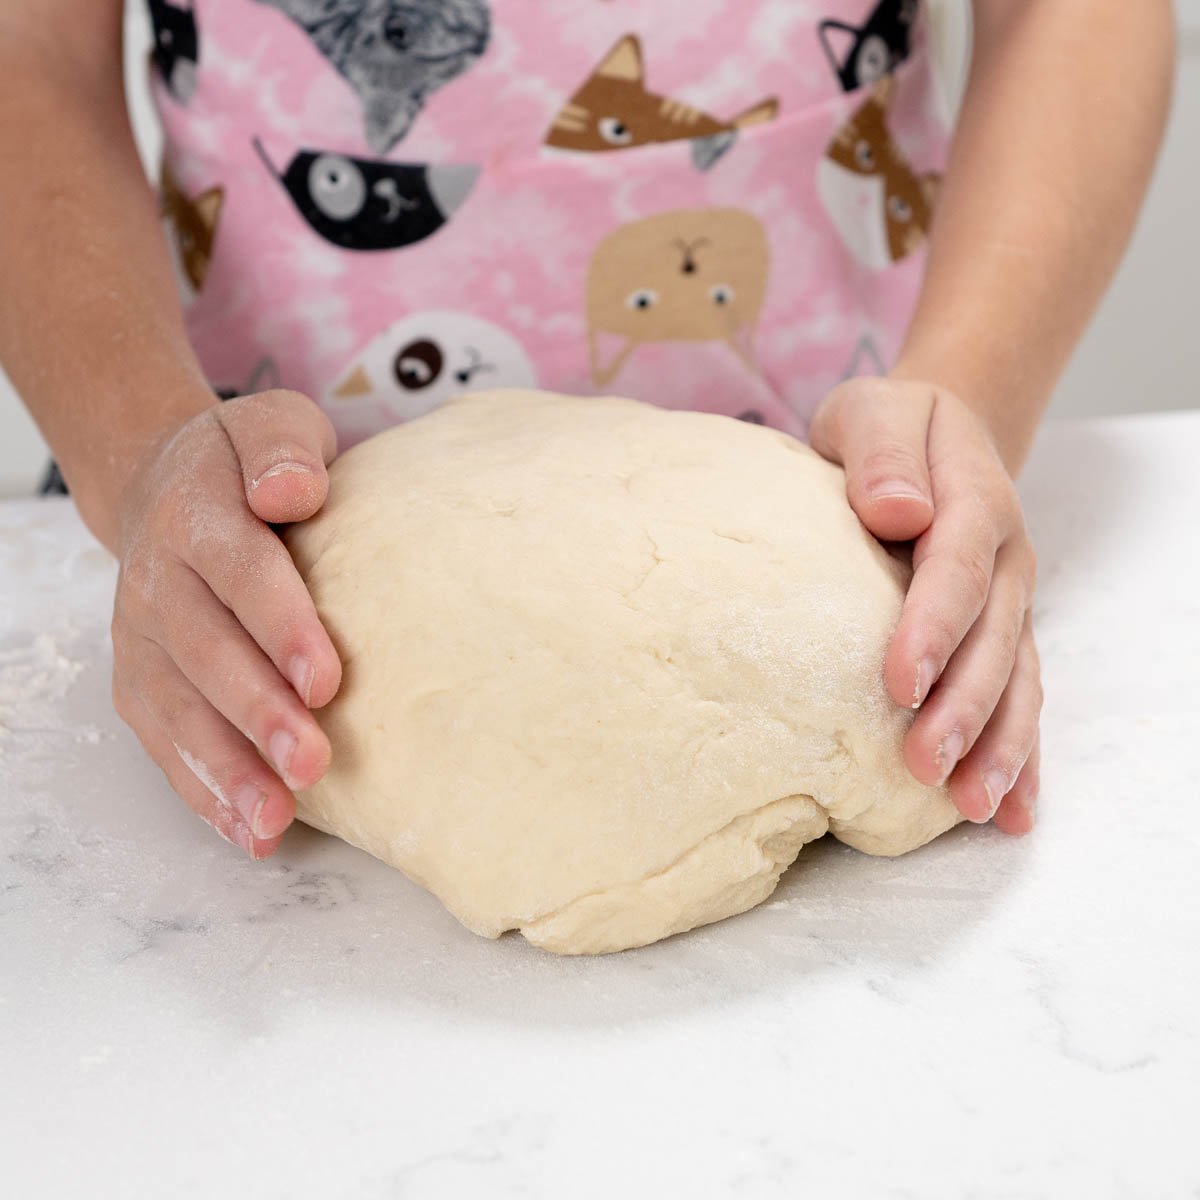 shaping bread dough into a smooth ball